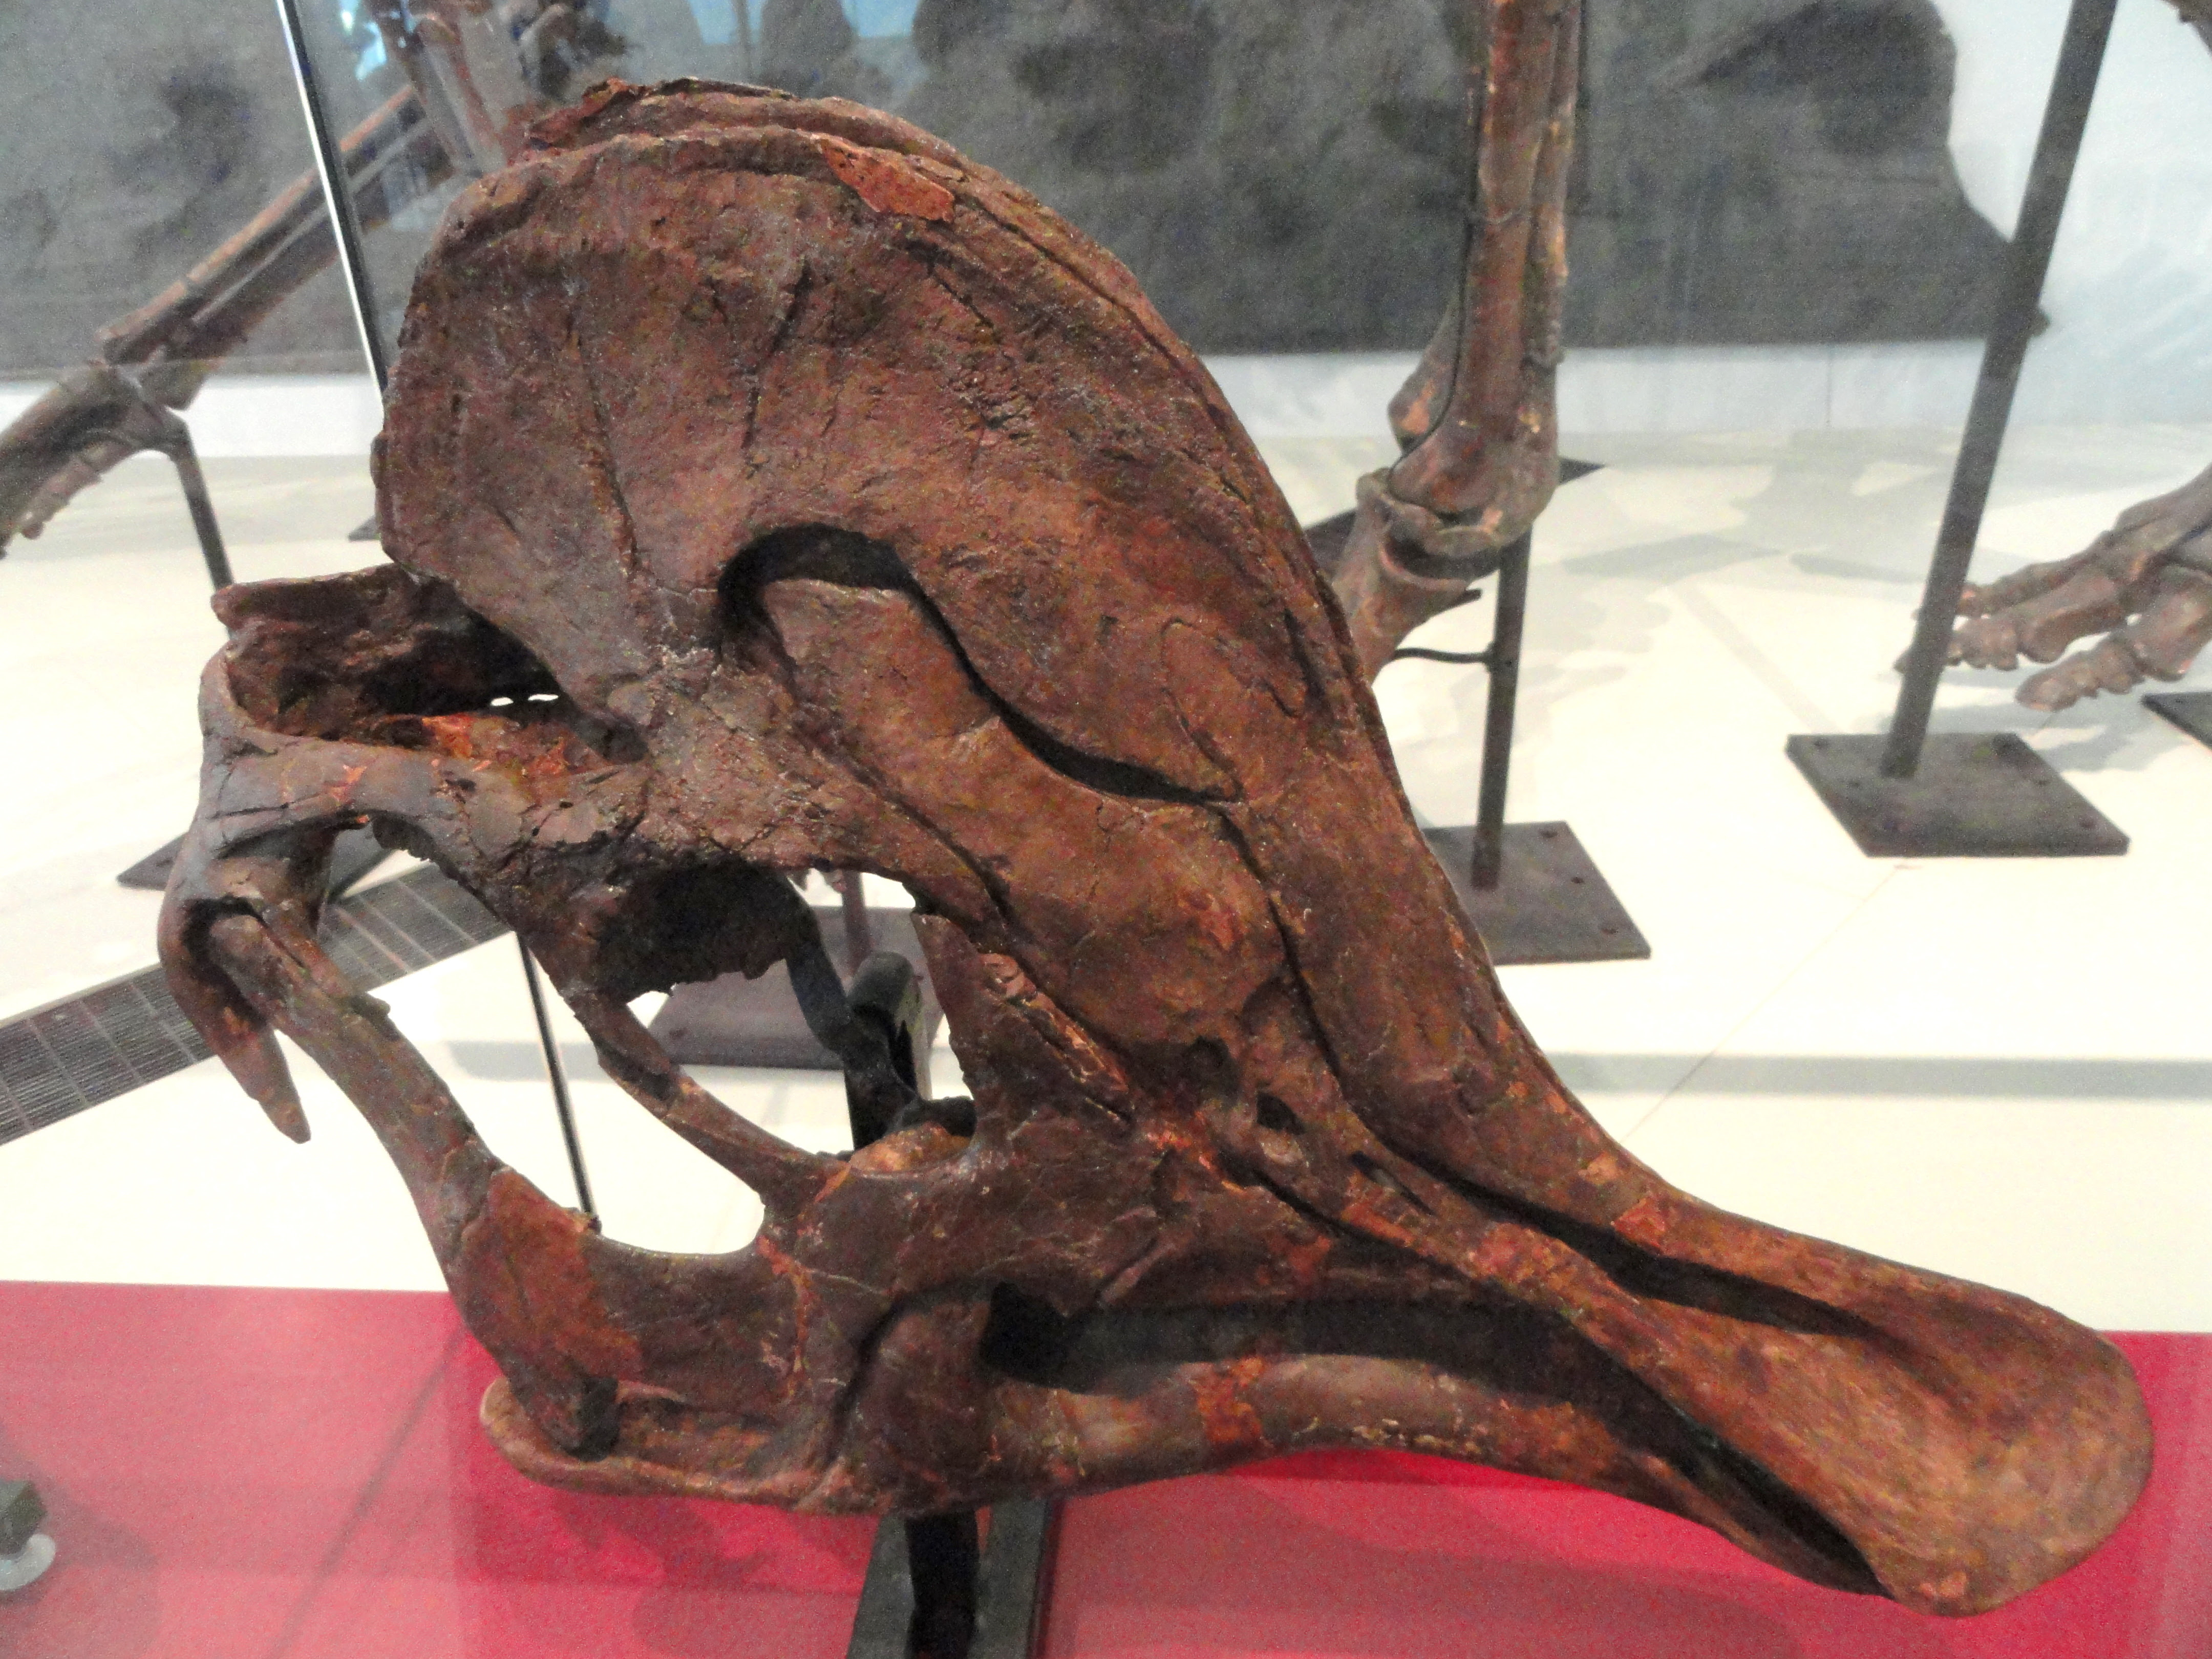 Image Corythosaurus cauarius, subadult skull and jaws, Dinosaur